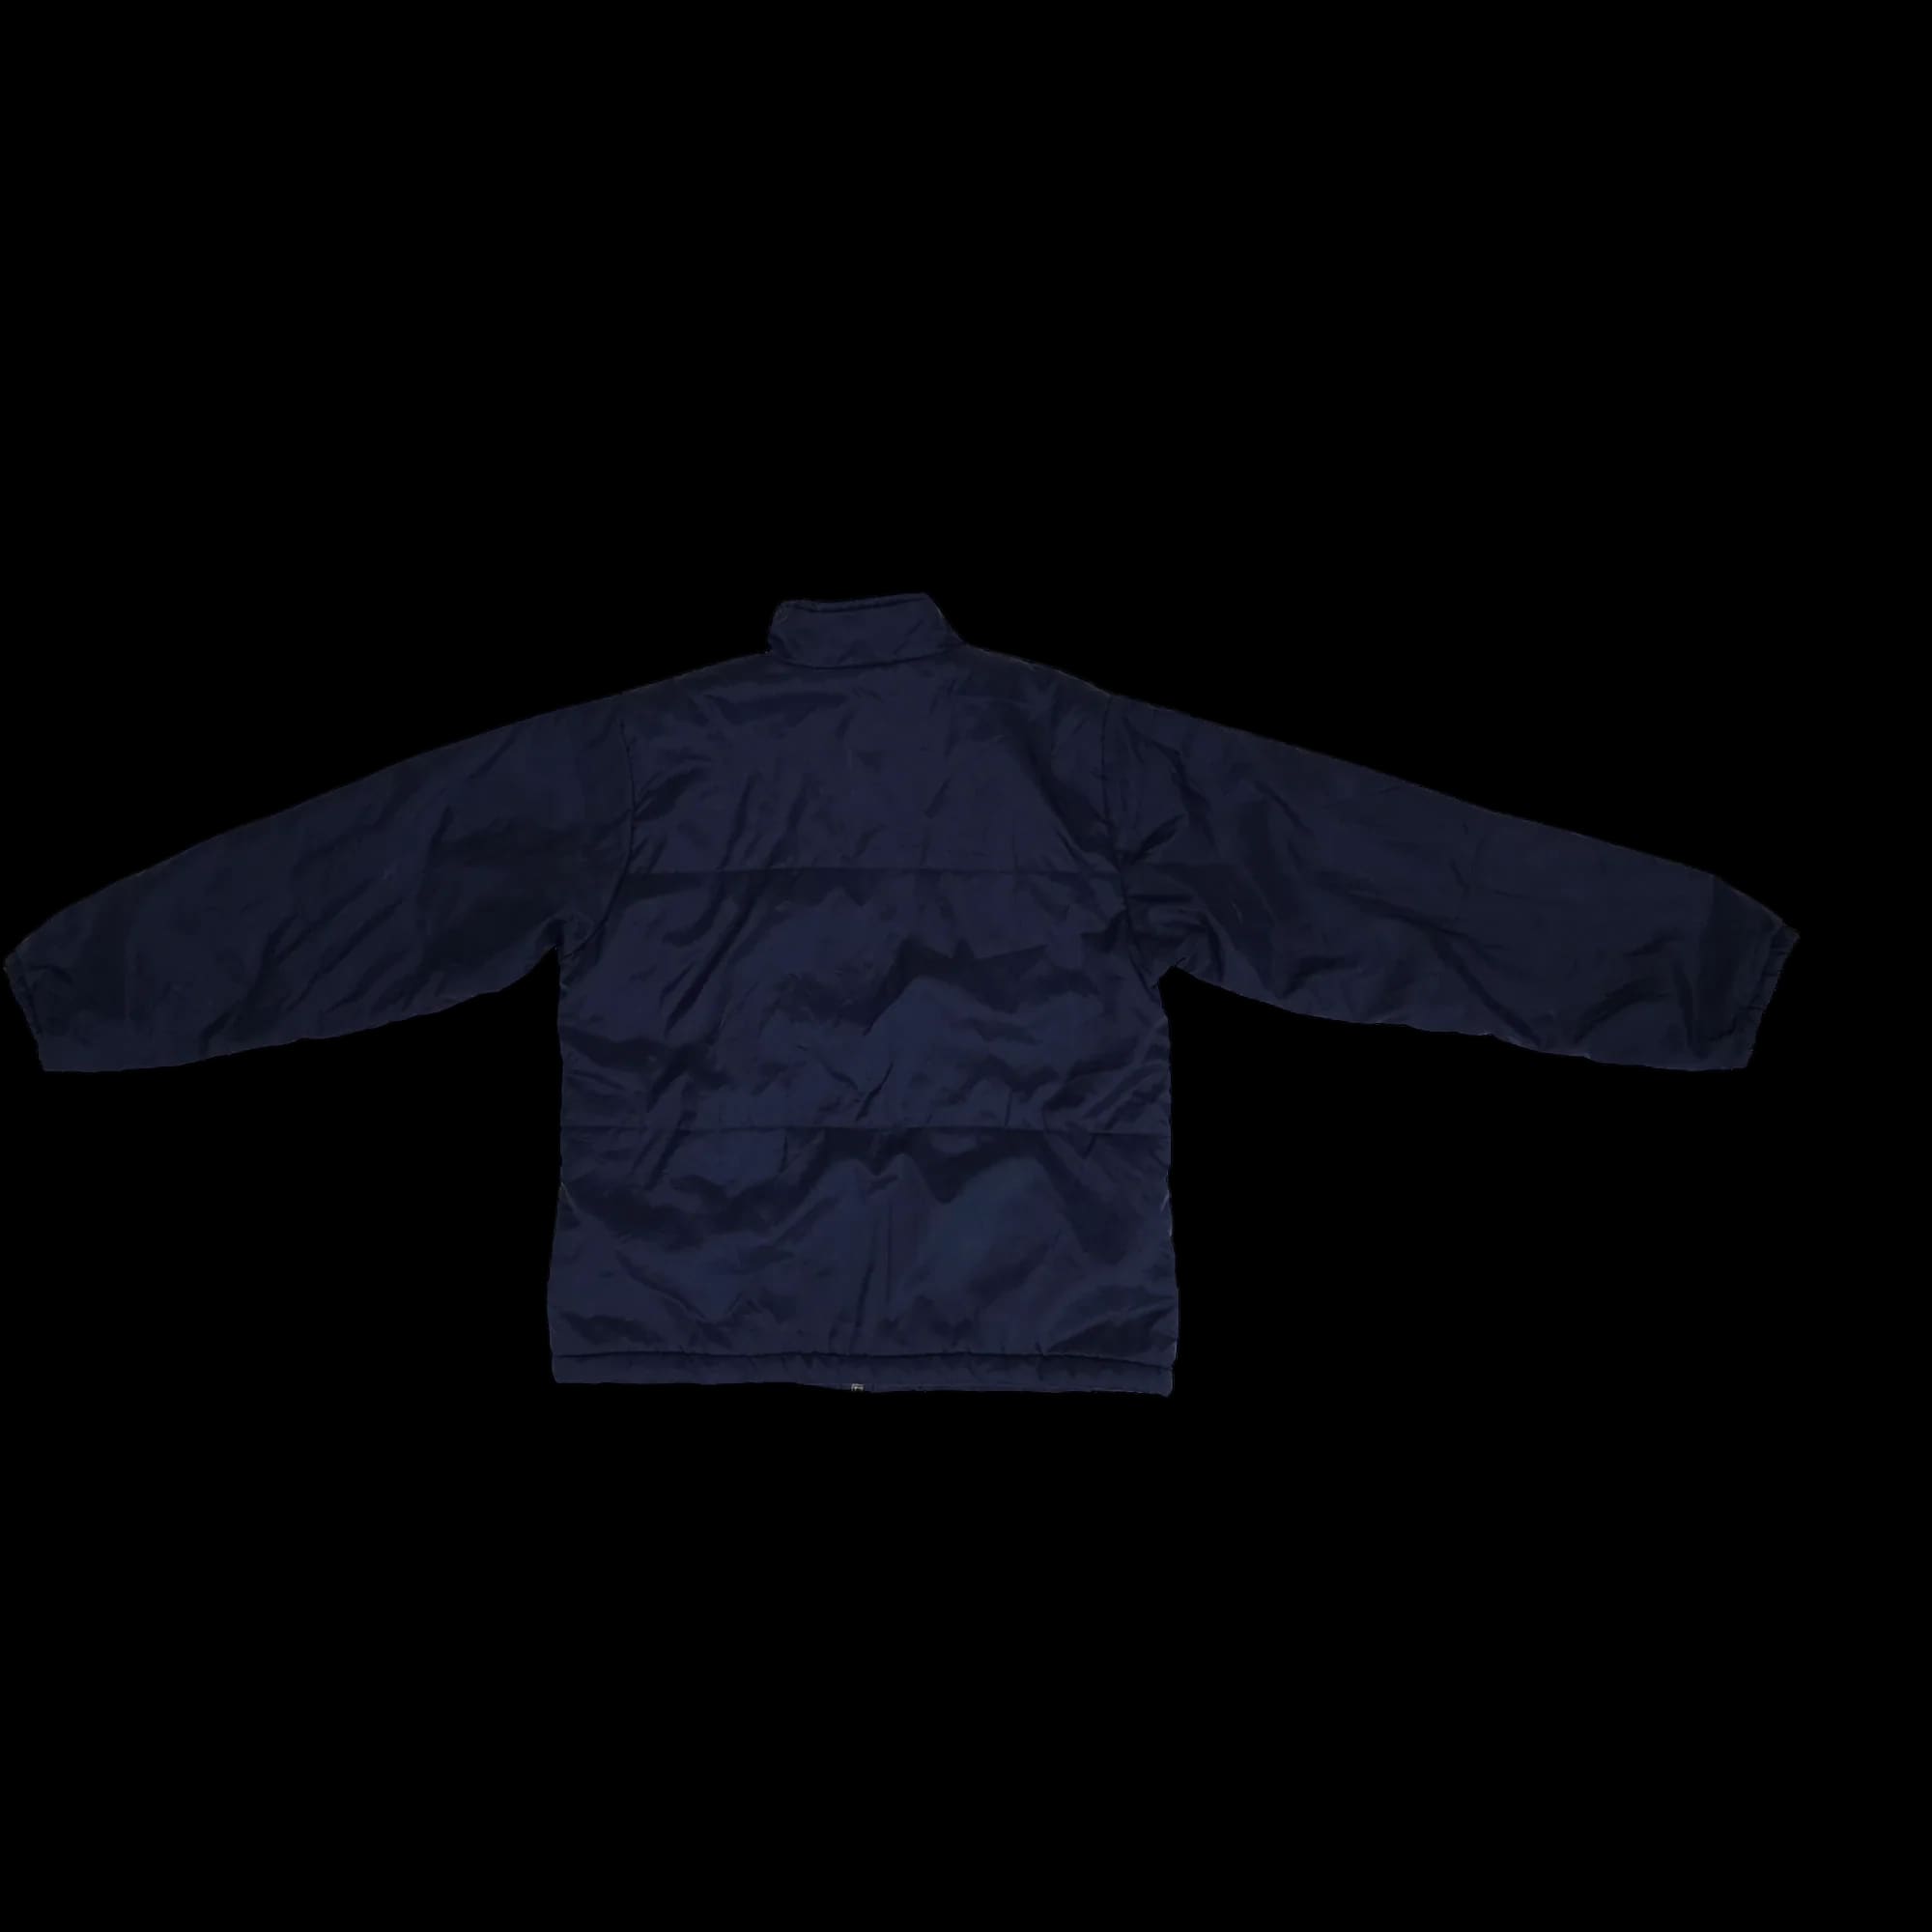 Unisex Nike Blue Bomber Jacket Coat UK Large - 5 - 3465